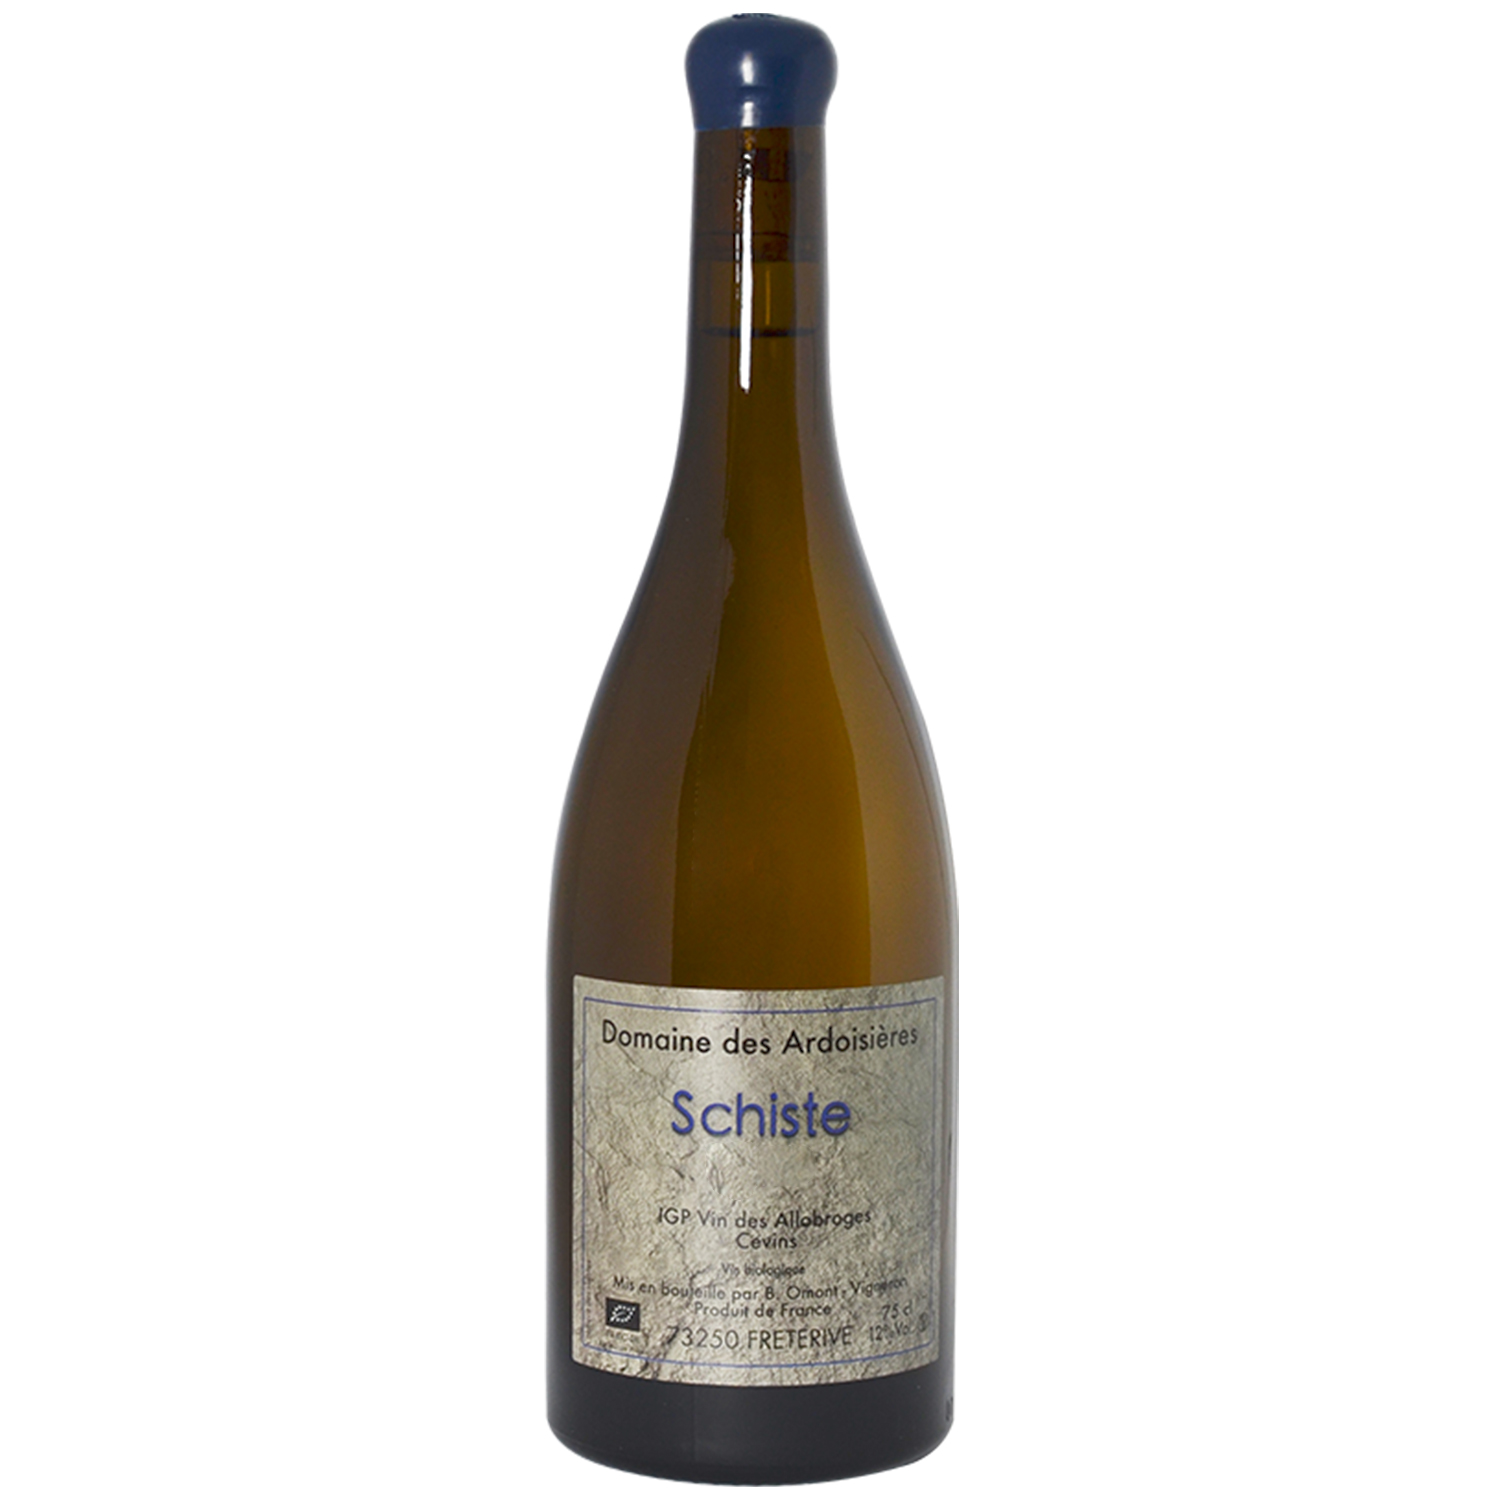 Schiste - IGP Vin des Allobroges - Domaine des Ardoisières - 2020